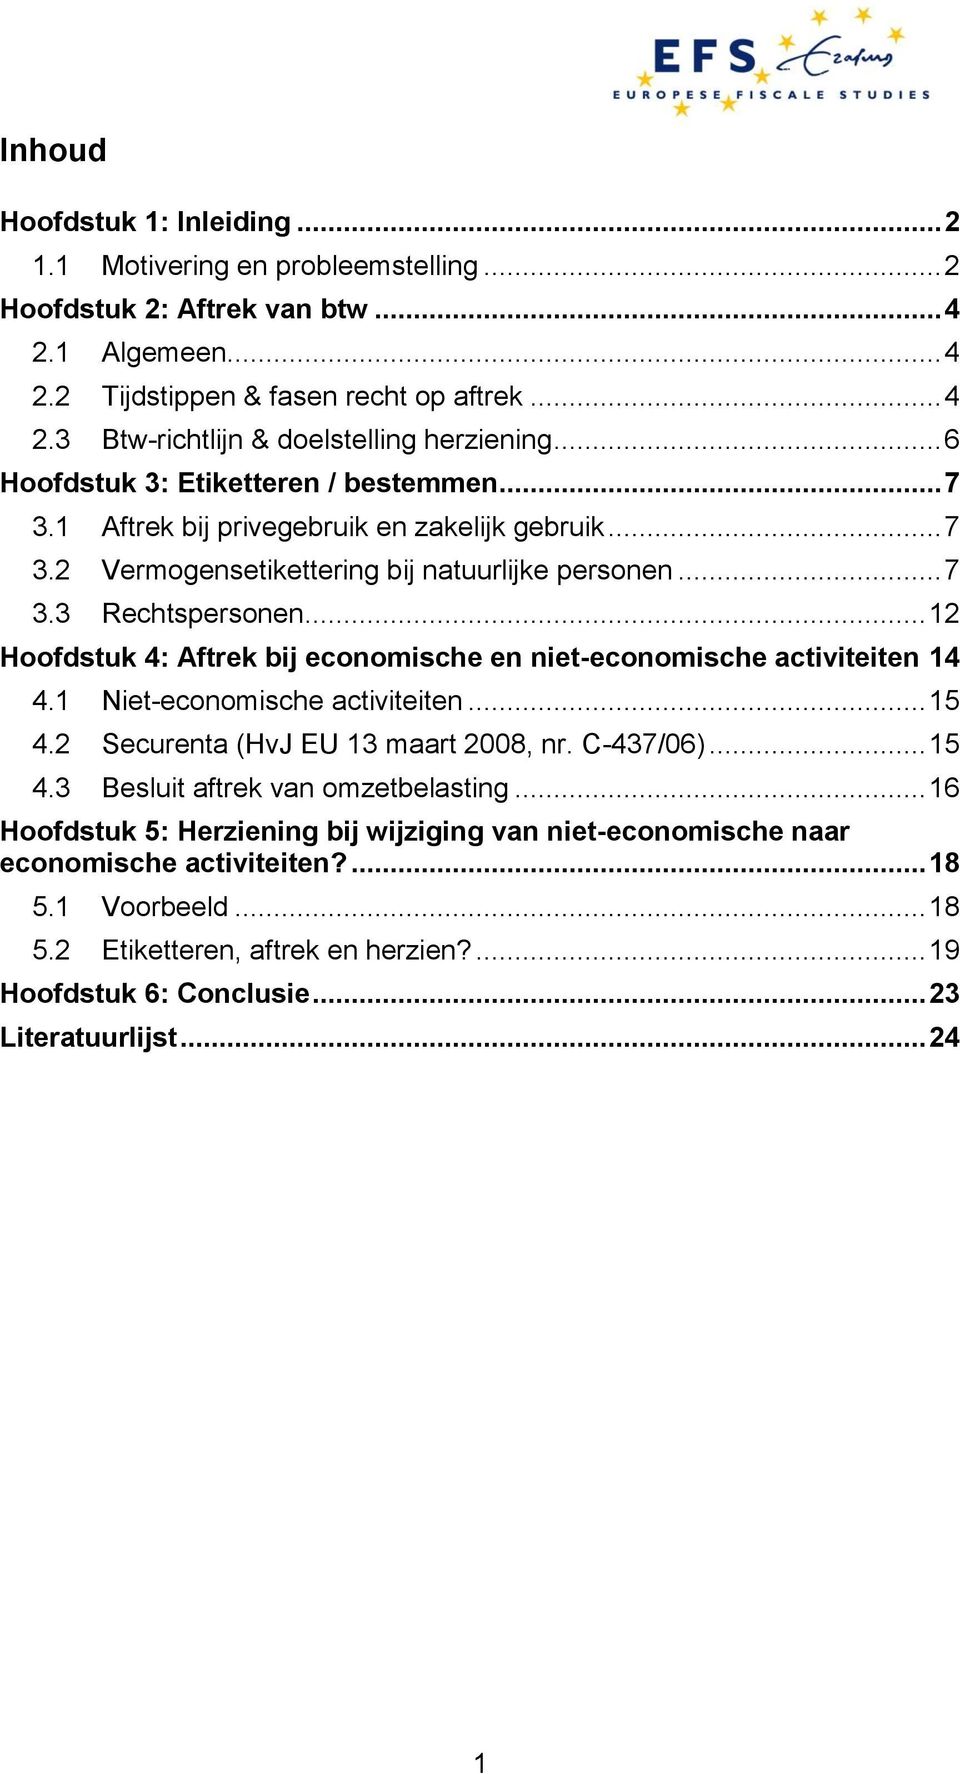 .. 12 Hoofdstuk 4: Aftrek bij economische en niet-economische activiteiten 14 4.1 Niet-economische activiteiten... 15 4.2 Securenta (HvJ EU 13 maart 2008, nr. C-437/06)... 15 4.3 Besluit aftrek van omzetbelasting.